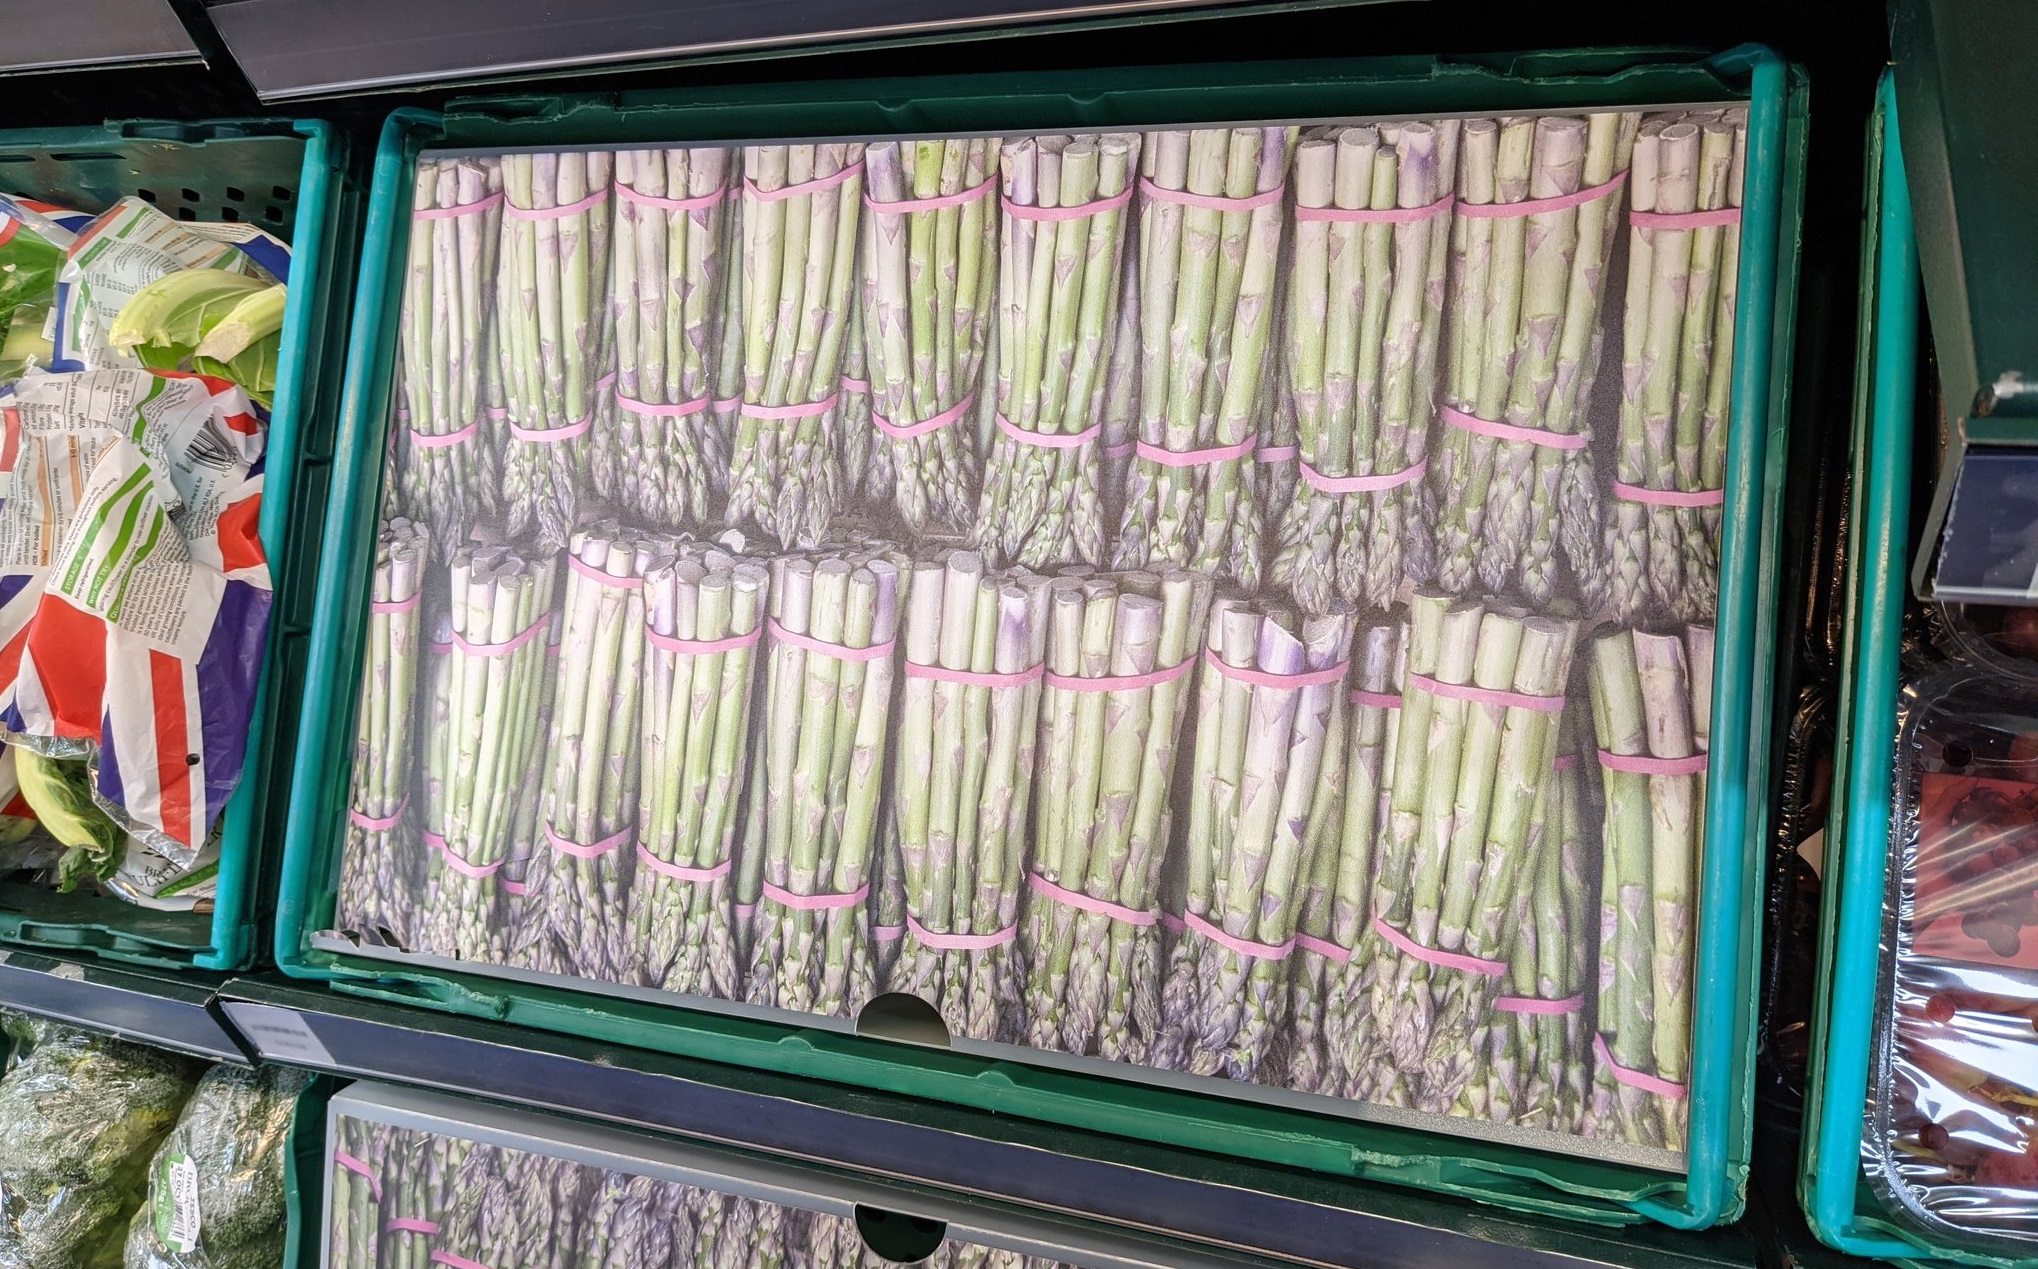 Supermarket-urile din Anglia expun imagini cu fructe și legume în locul rafturilor goale, pentru a ascunde lipsurile